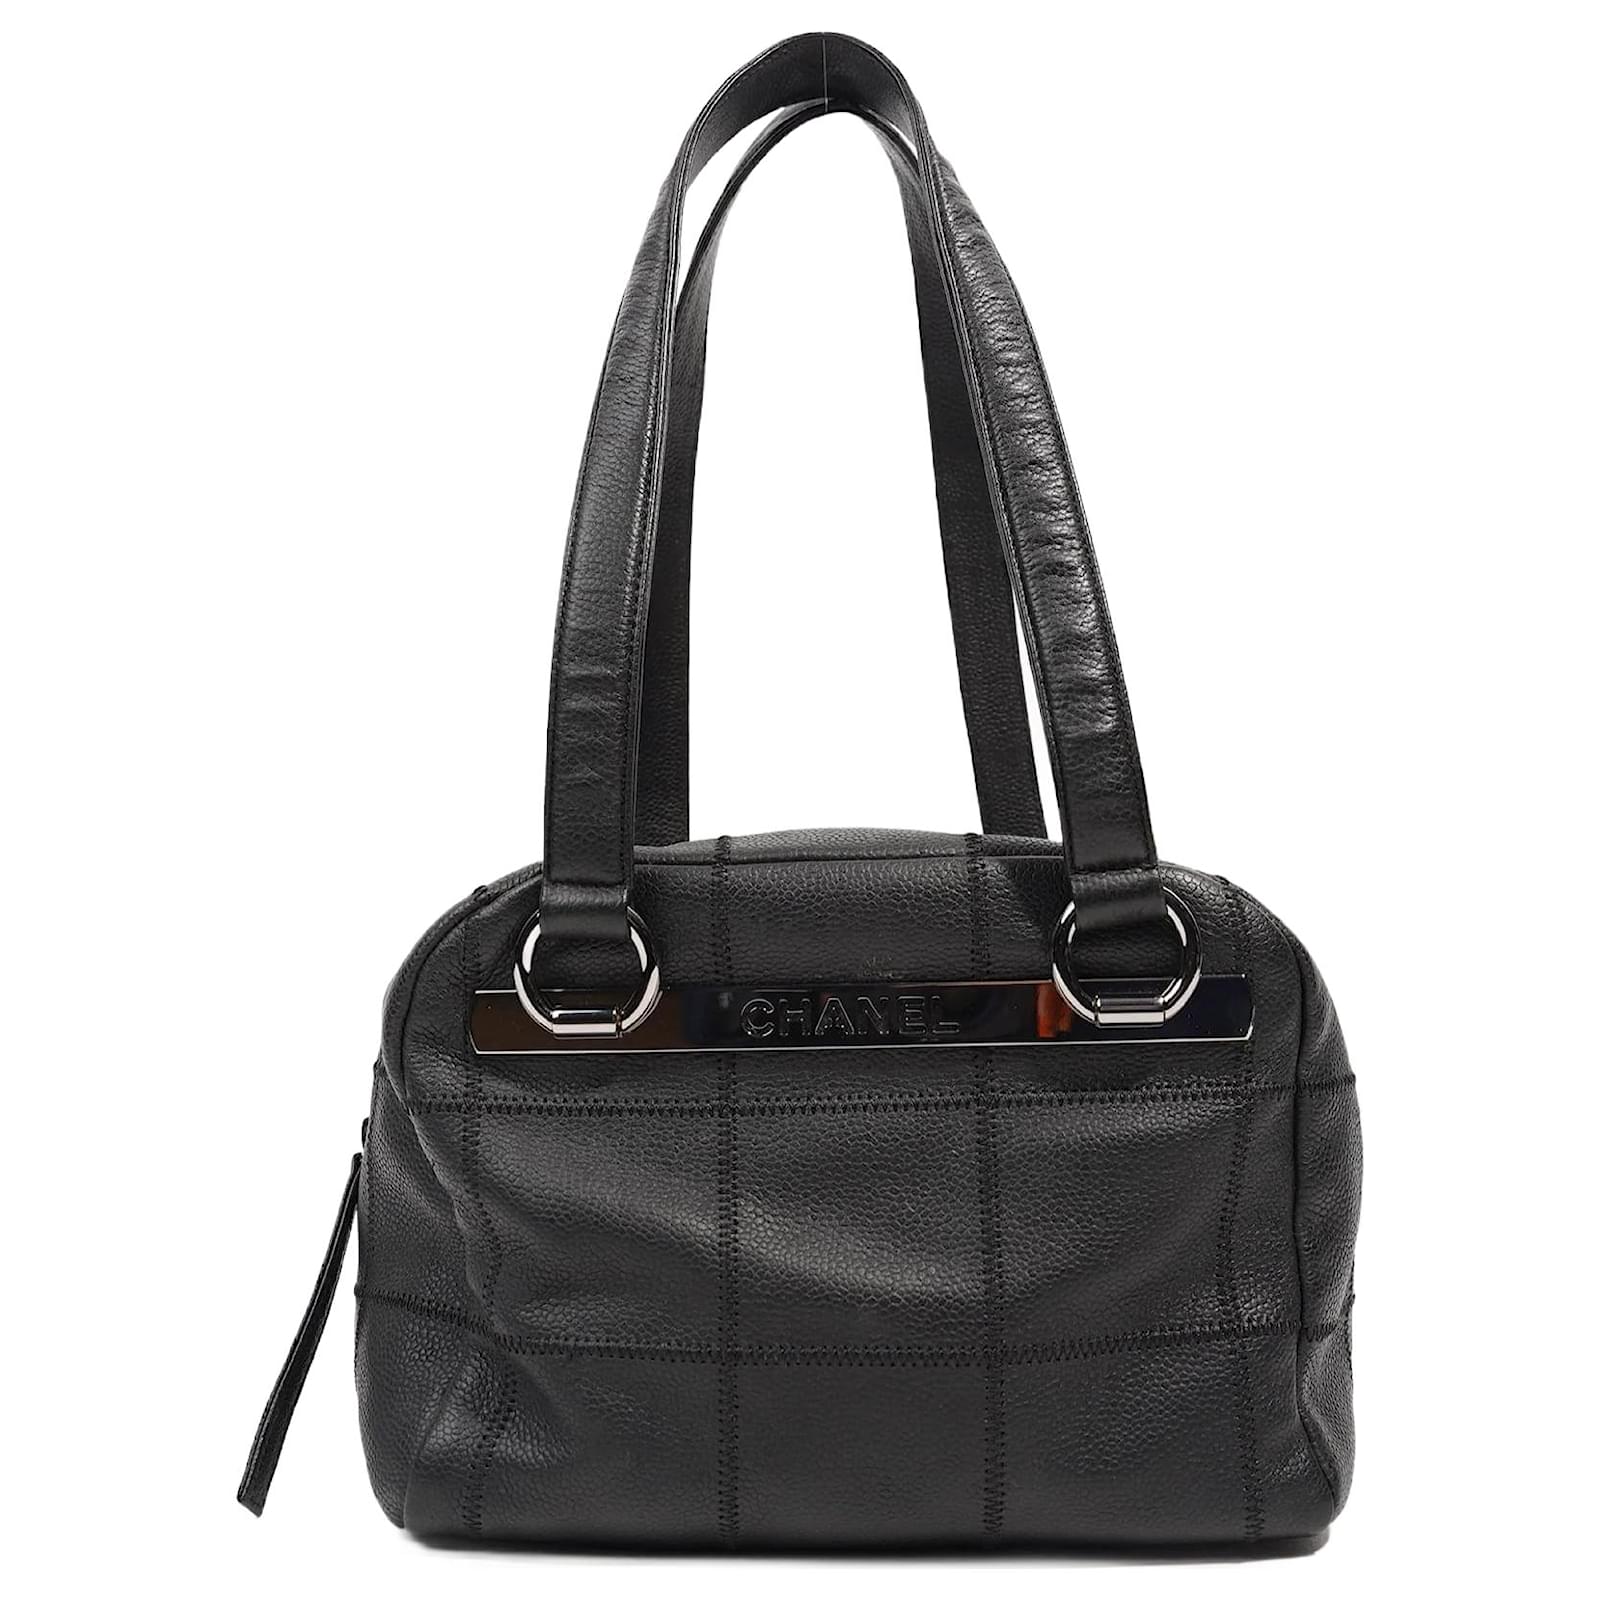 black small chanel purse box